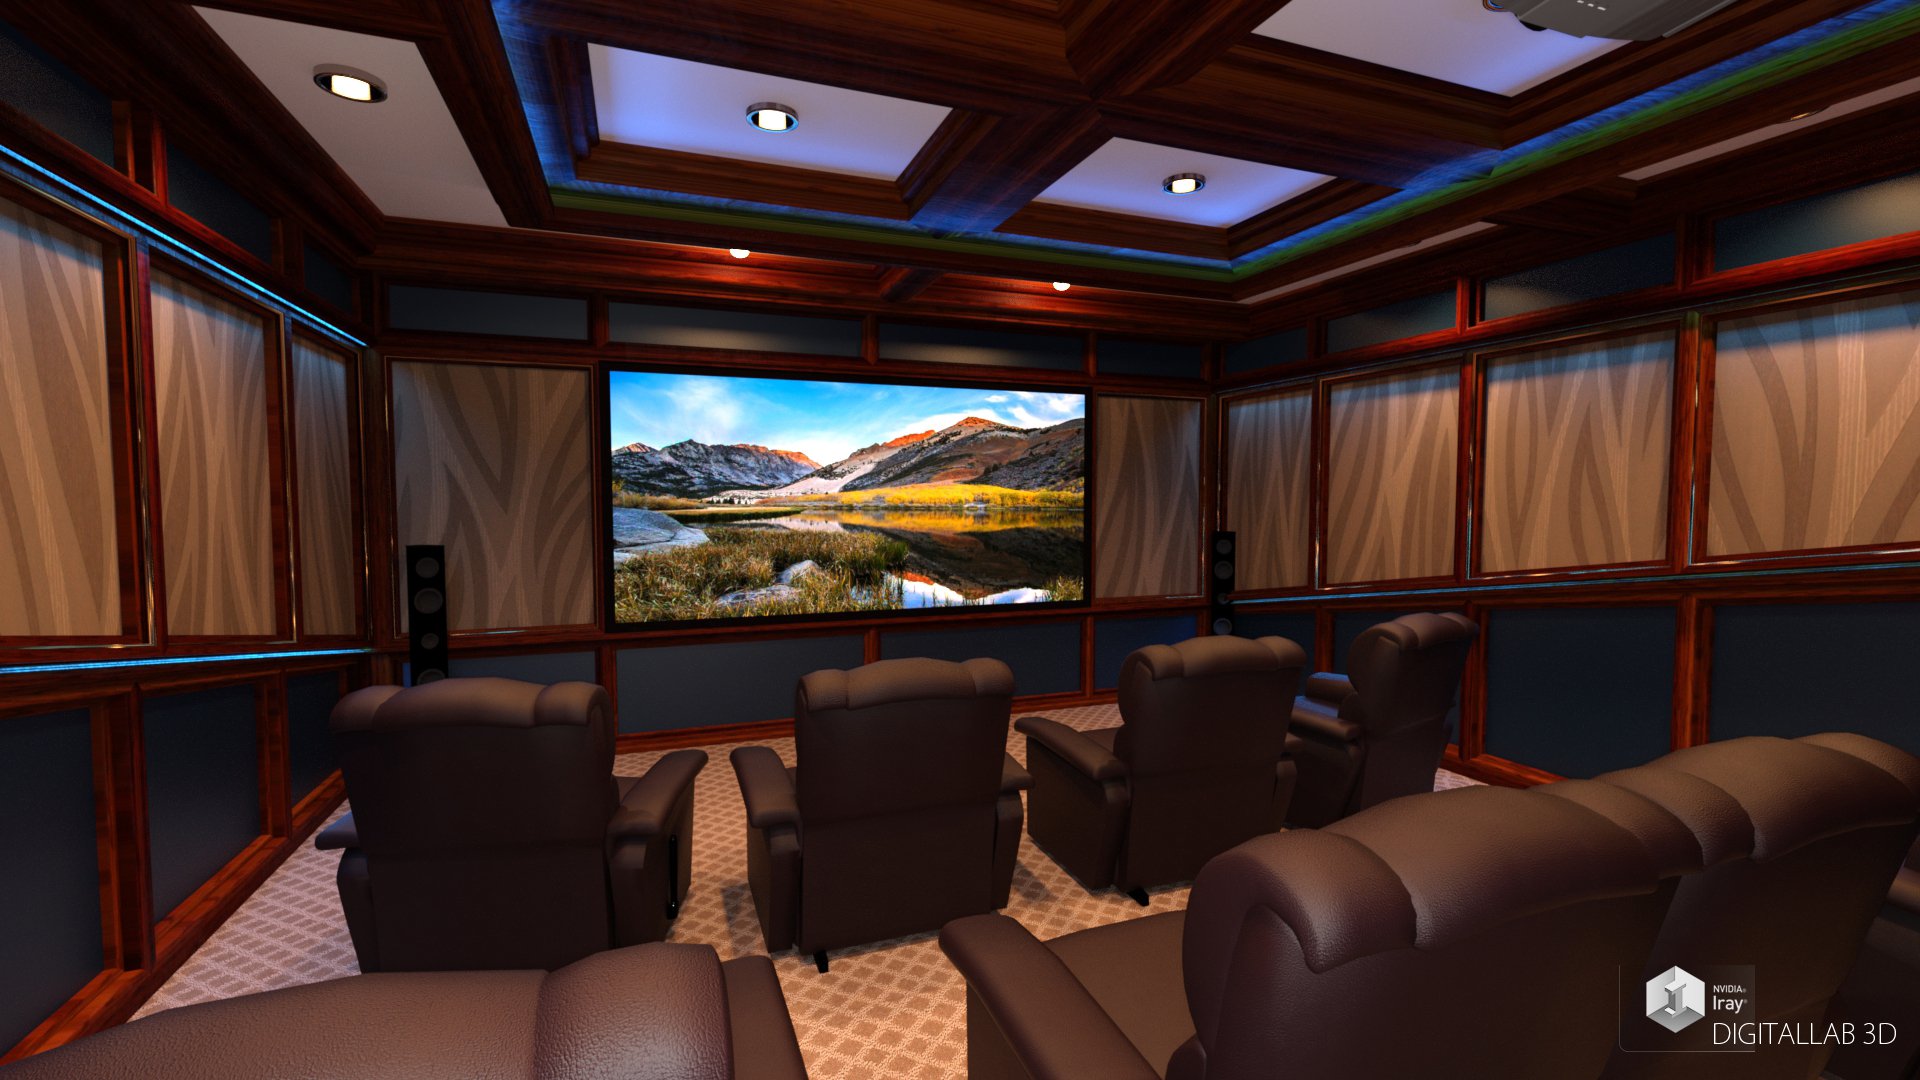 Digitallab3d Home Theater by: Digitallab3D, 3D Models by Daz 3D